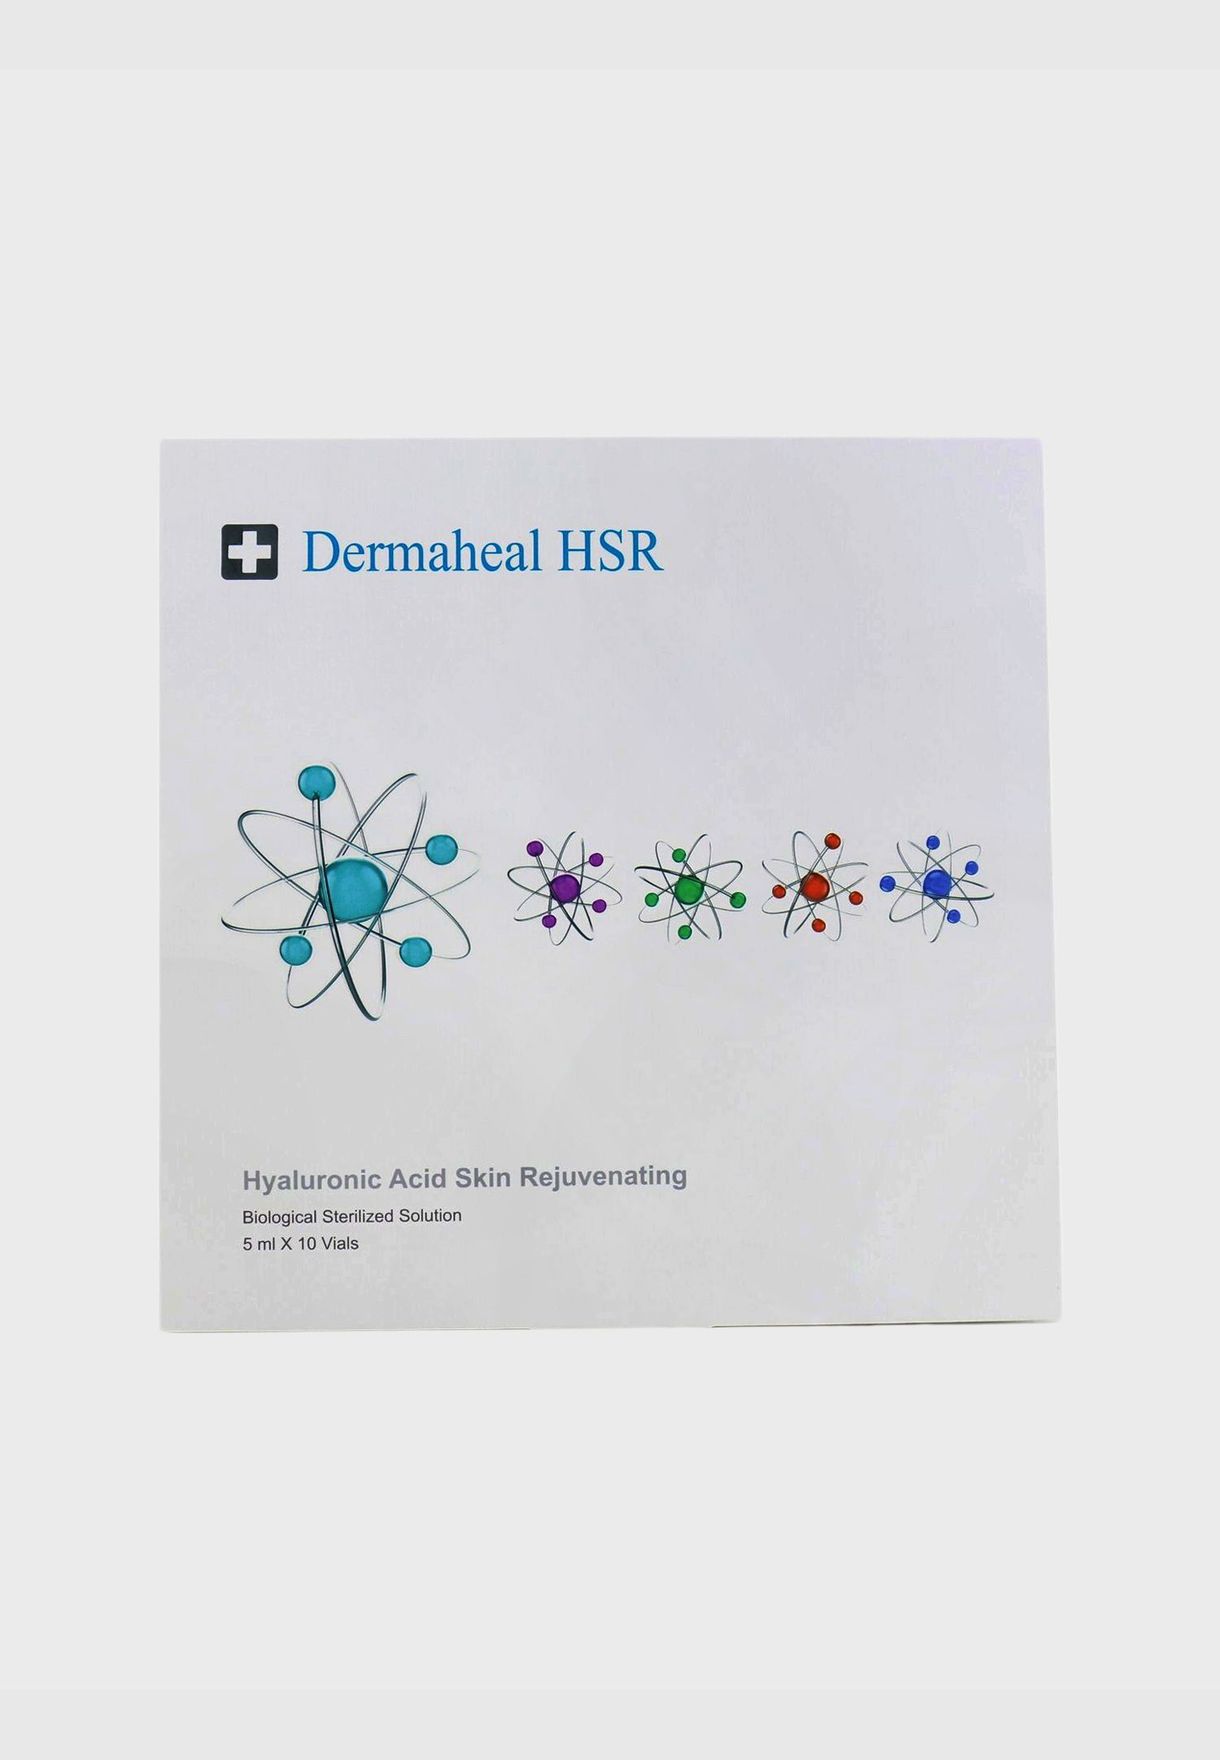 HSR - Hyaluronic Acid Skin Rejuvenating Biological Sterilized Solution